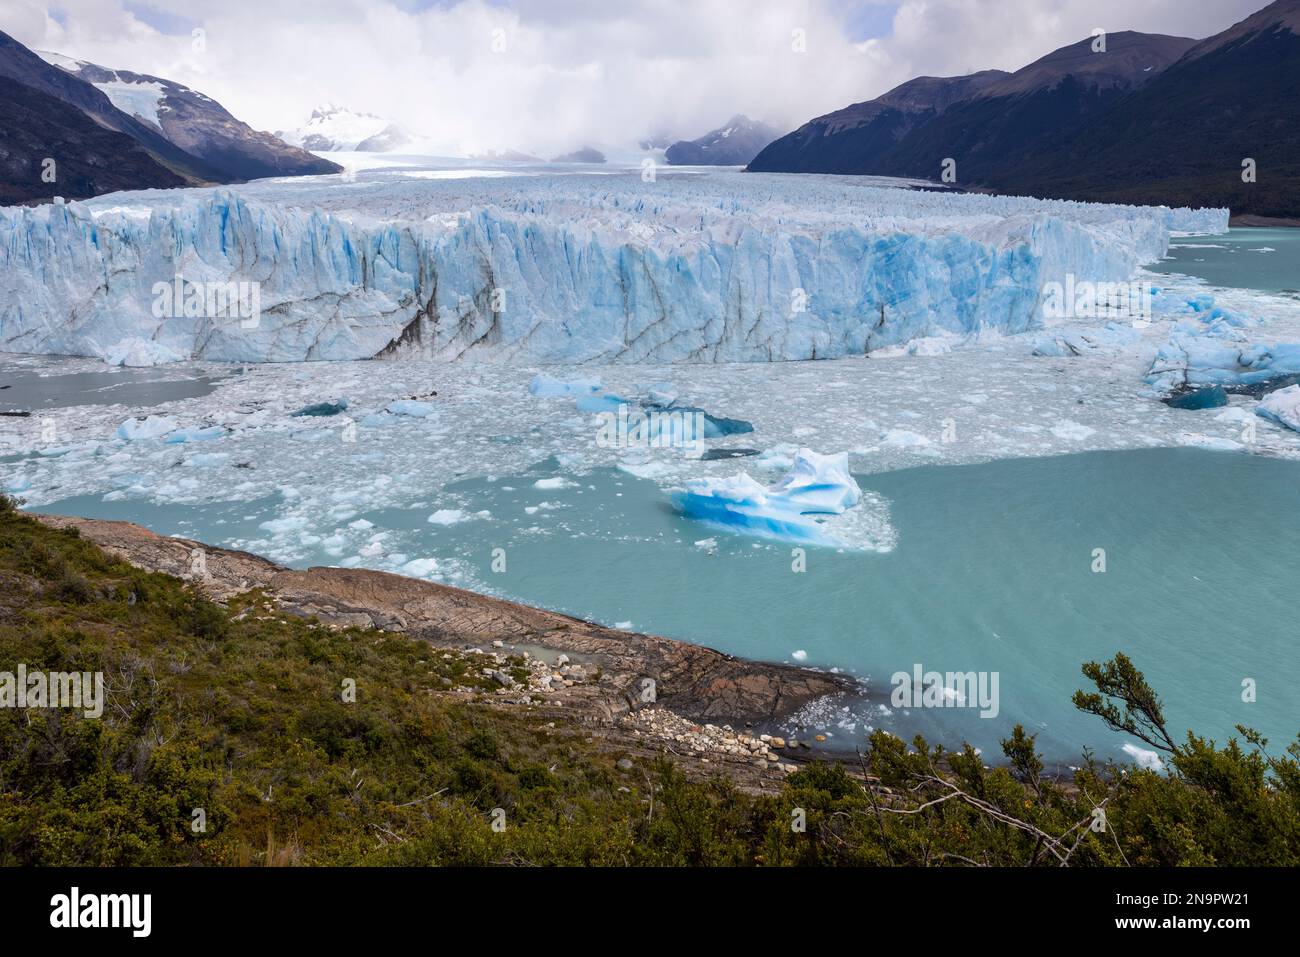 Der berühmte Gletscher und natürliche Anblick Perito Moreno mit dem eisigen Wasser des Lago Argentino in Patagonien, Argentinien, Südamerika Stockfoto